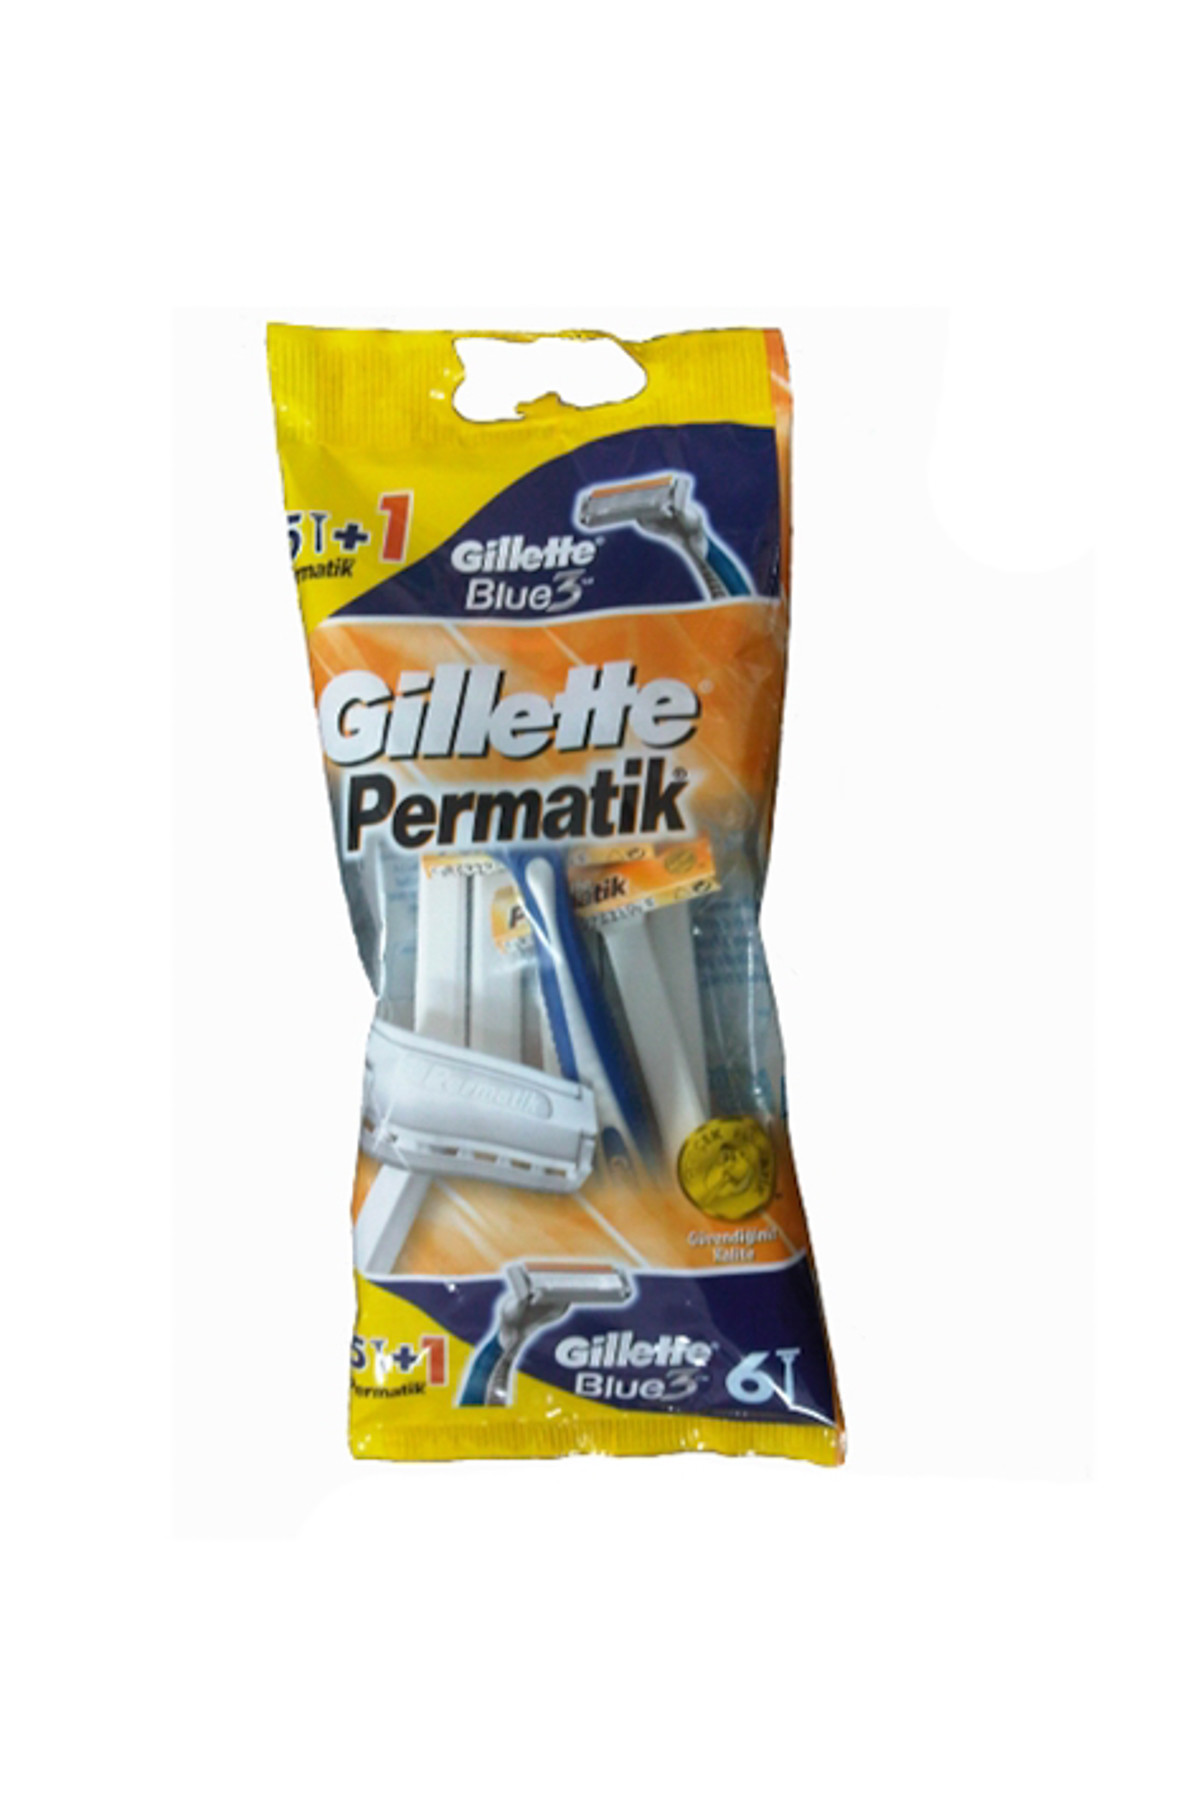 Gillette Permatik 5 Li + 1 Adet Blue 3 Kullan At Tıraş Bıçağı